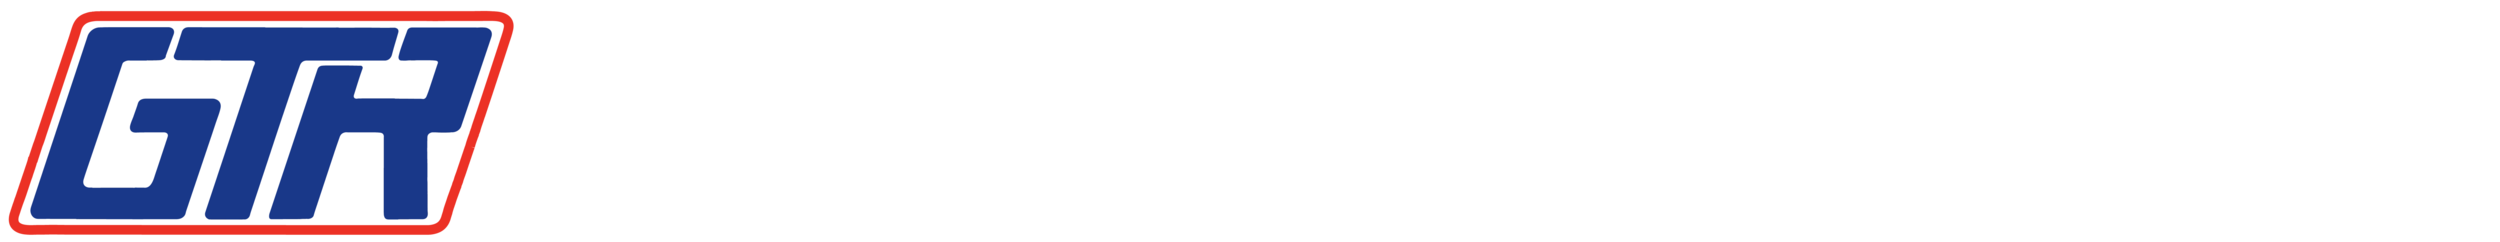 georges-tool-rental-logo-1.png